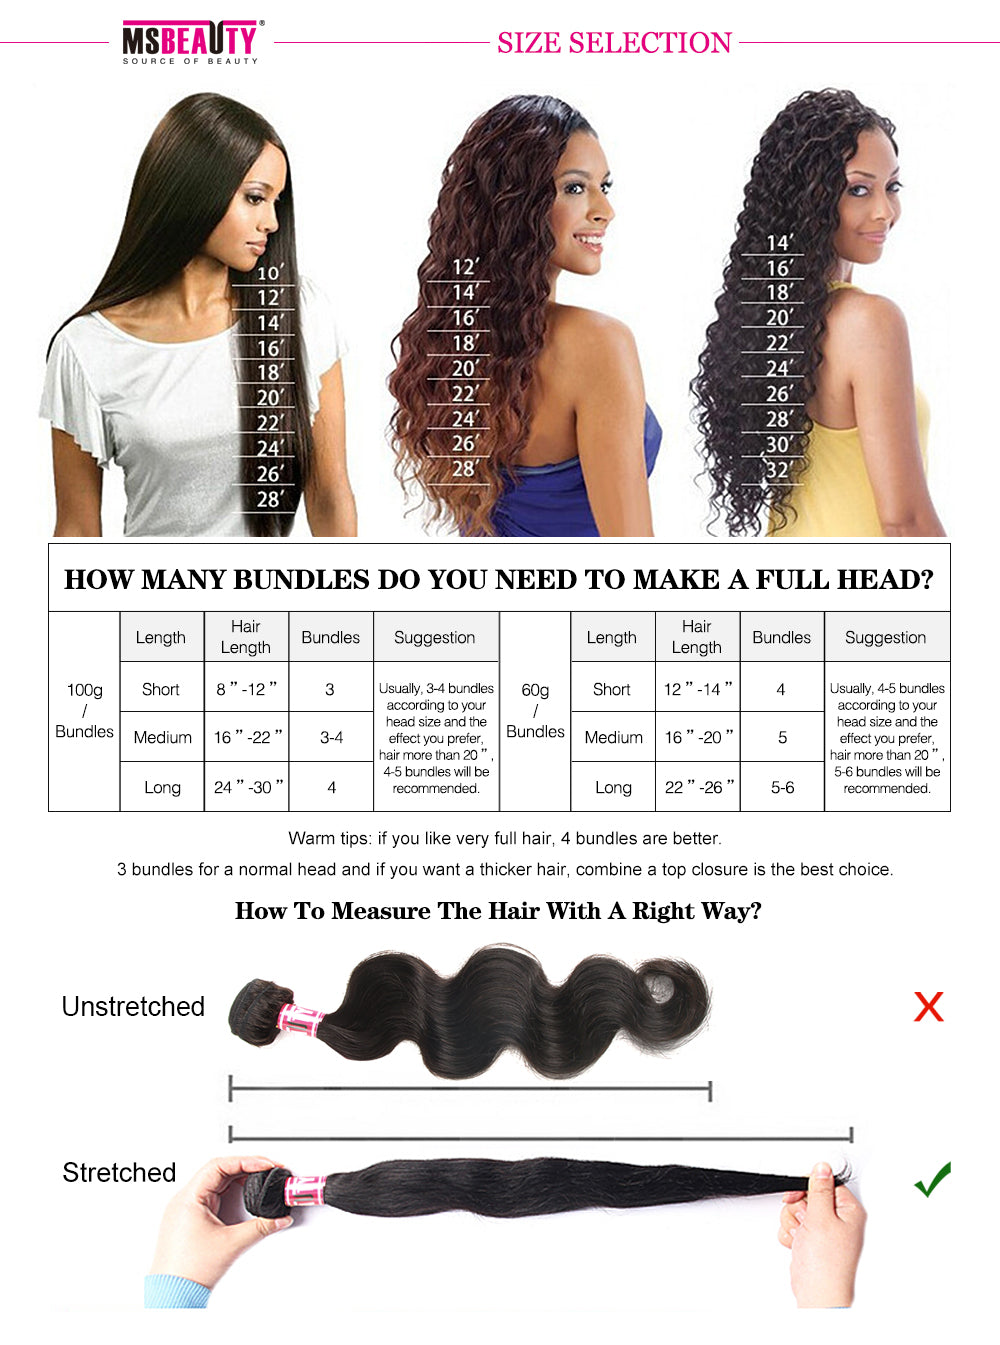 Msbeauty 8A Peruvian Loose Wave Human Hair 3 Bundles Deal 2019 Hair Best Seller - MSBEAUTY HAIR